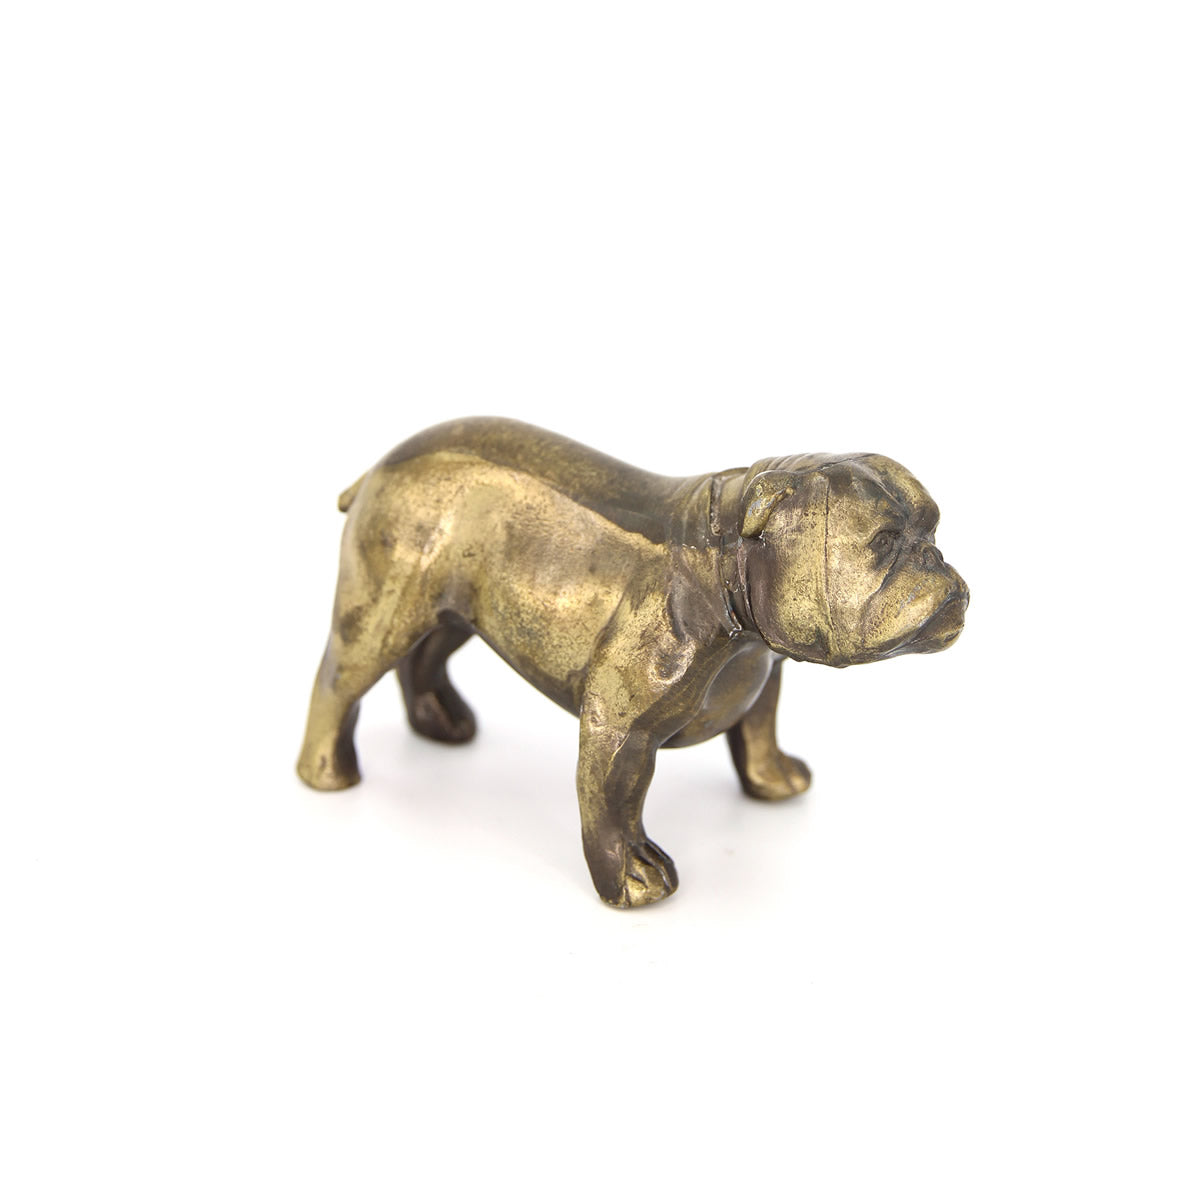 Antique Brass Bulldog Paperweight (Broken Tail)